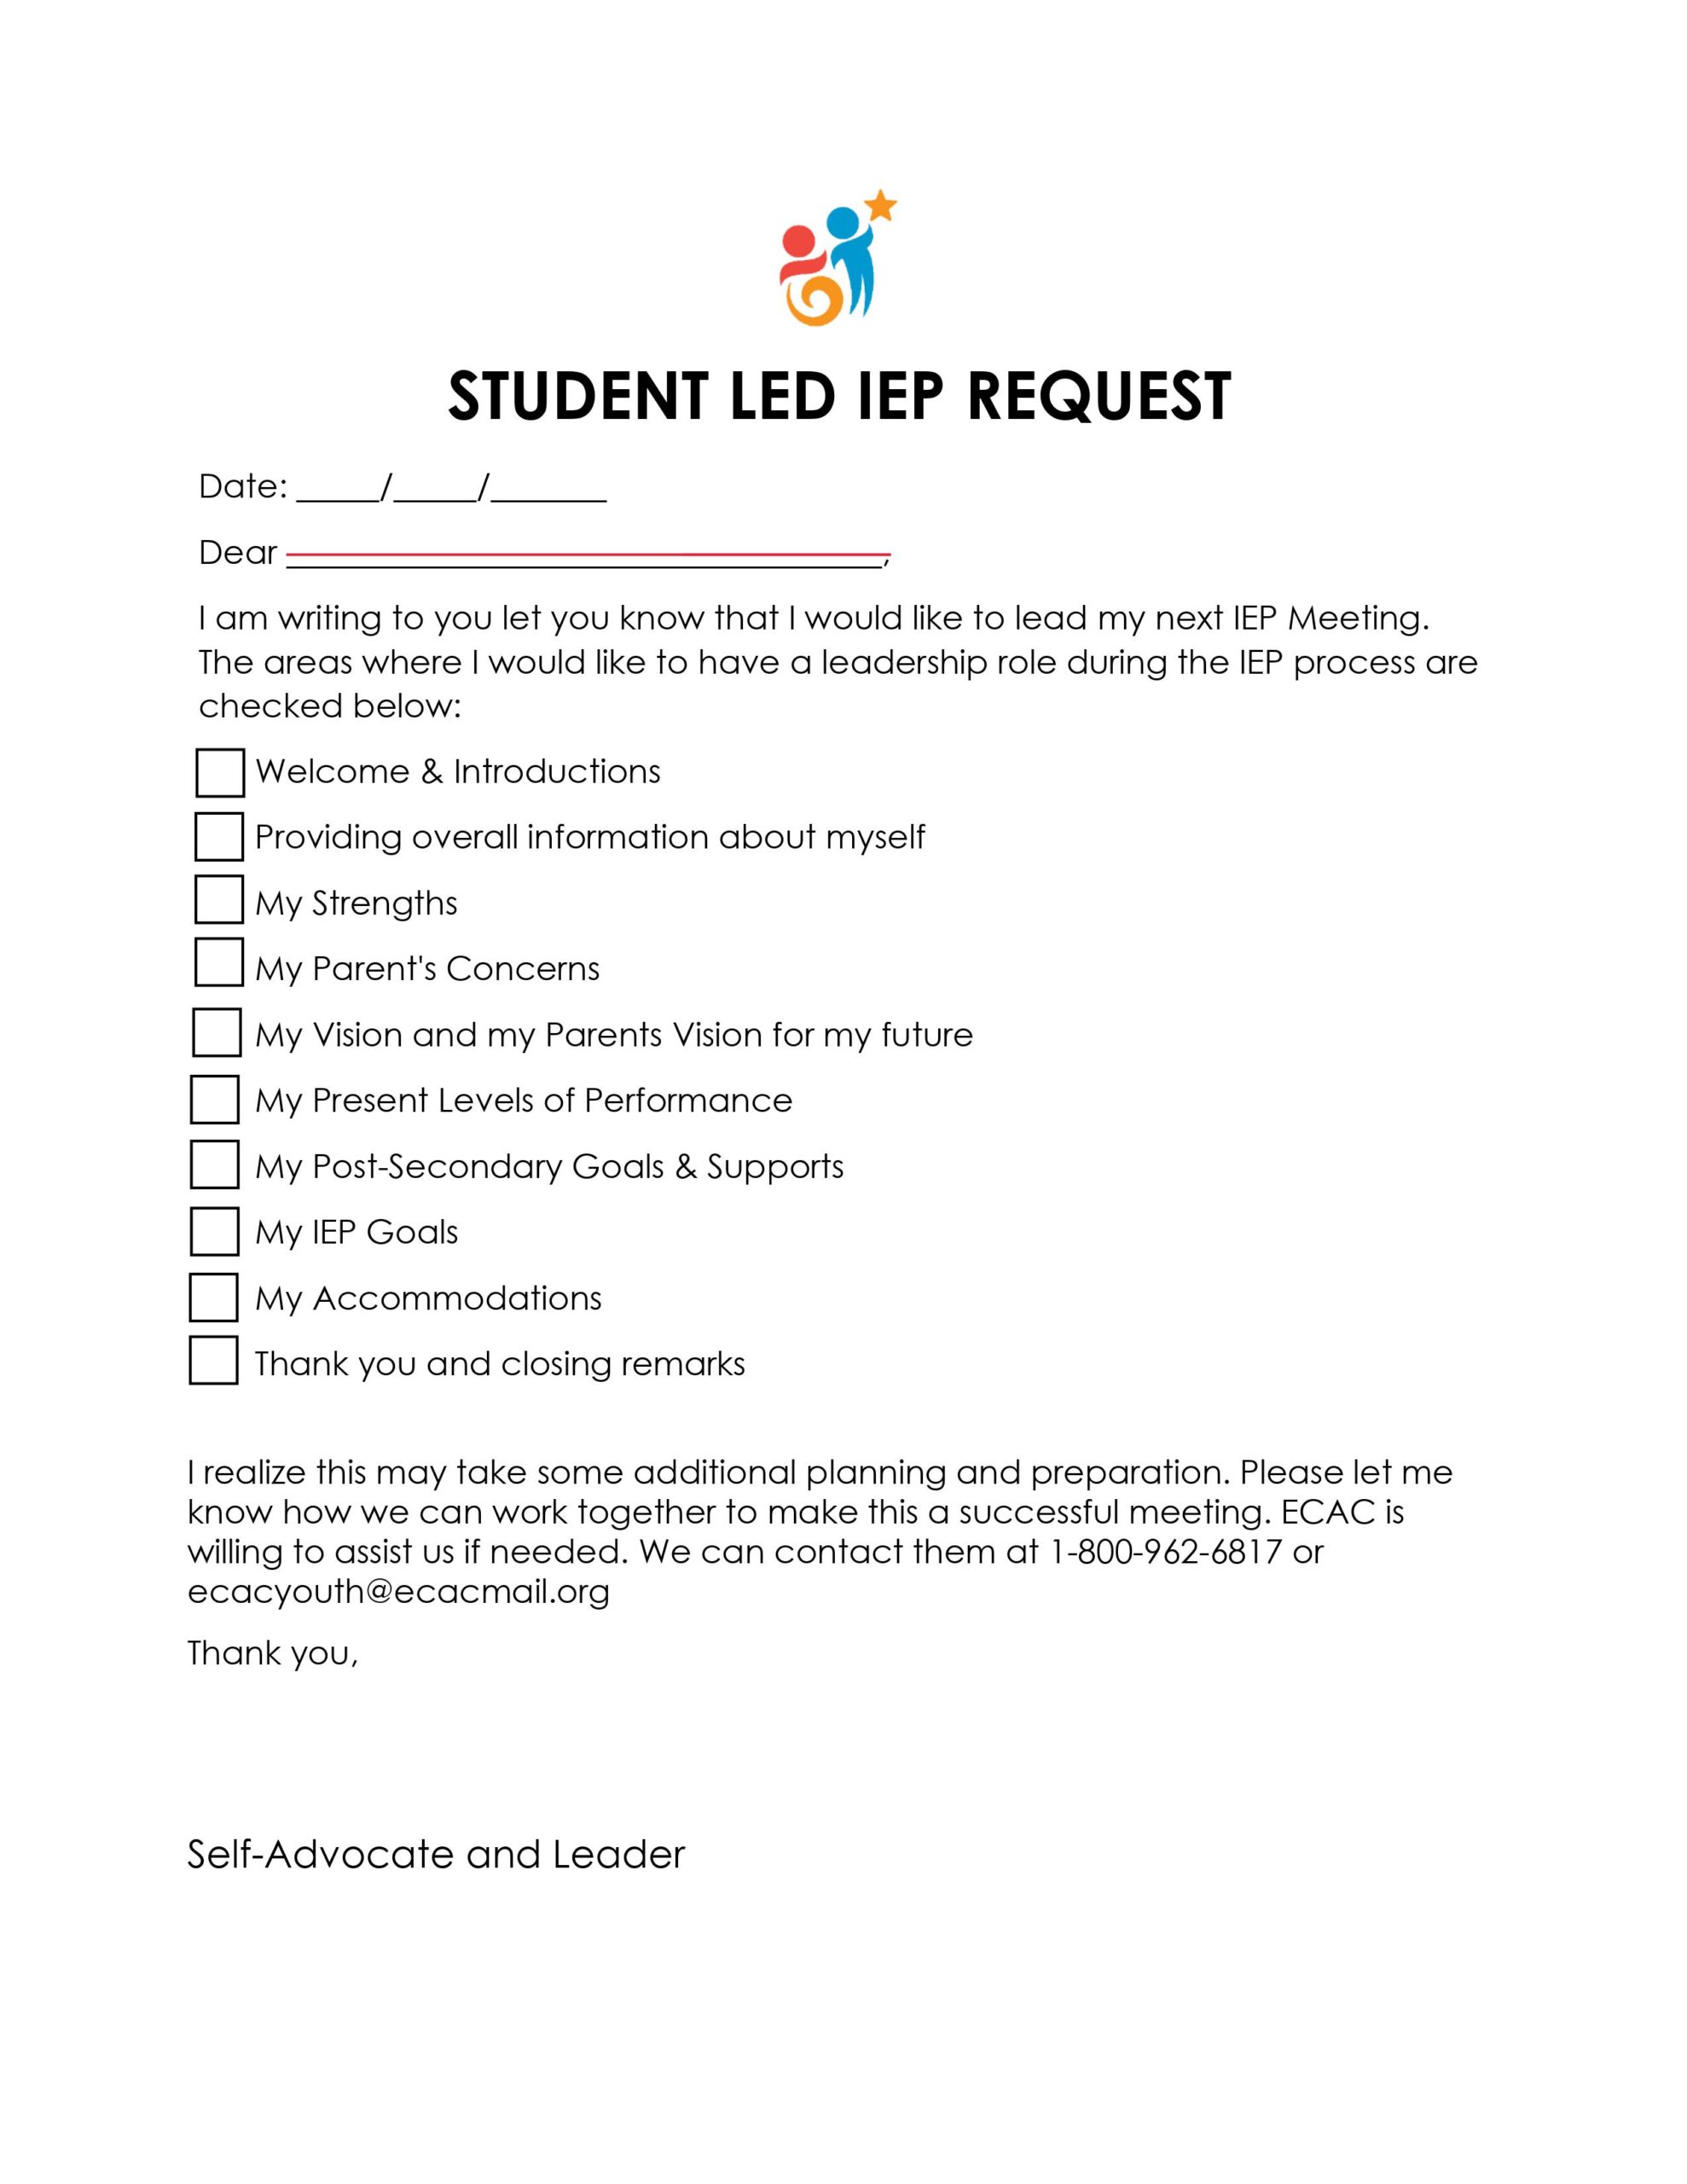 Image de la première page du formulaire de demande de PEI de l'élève